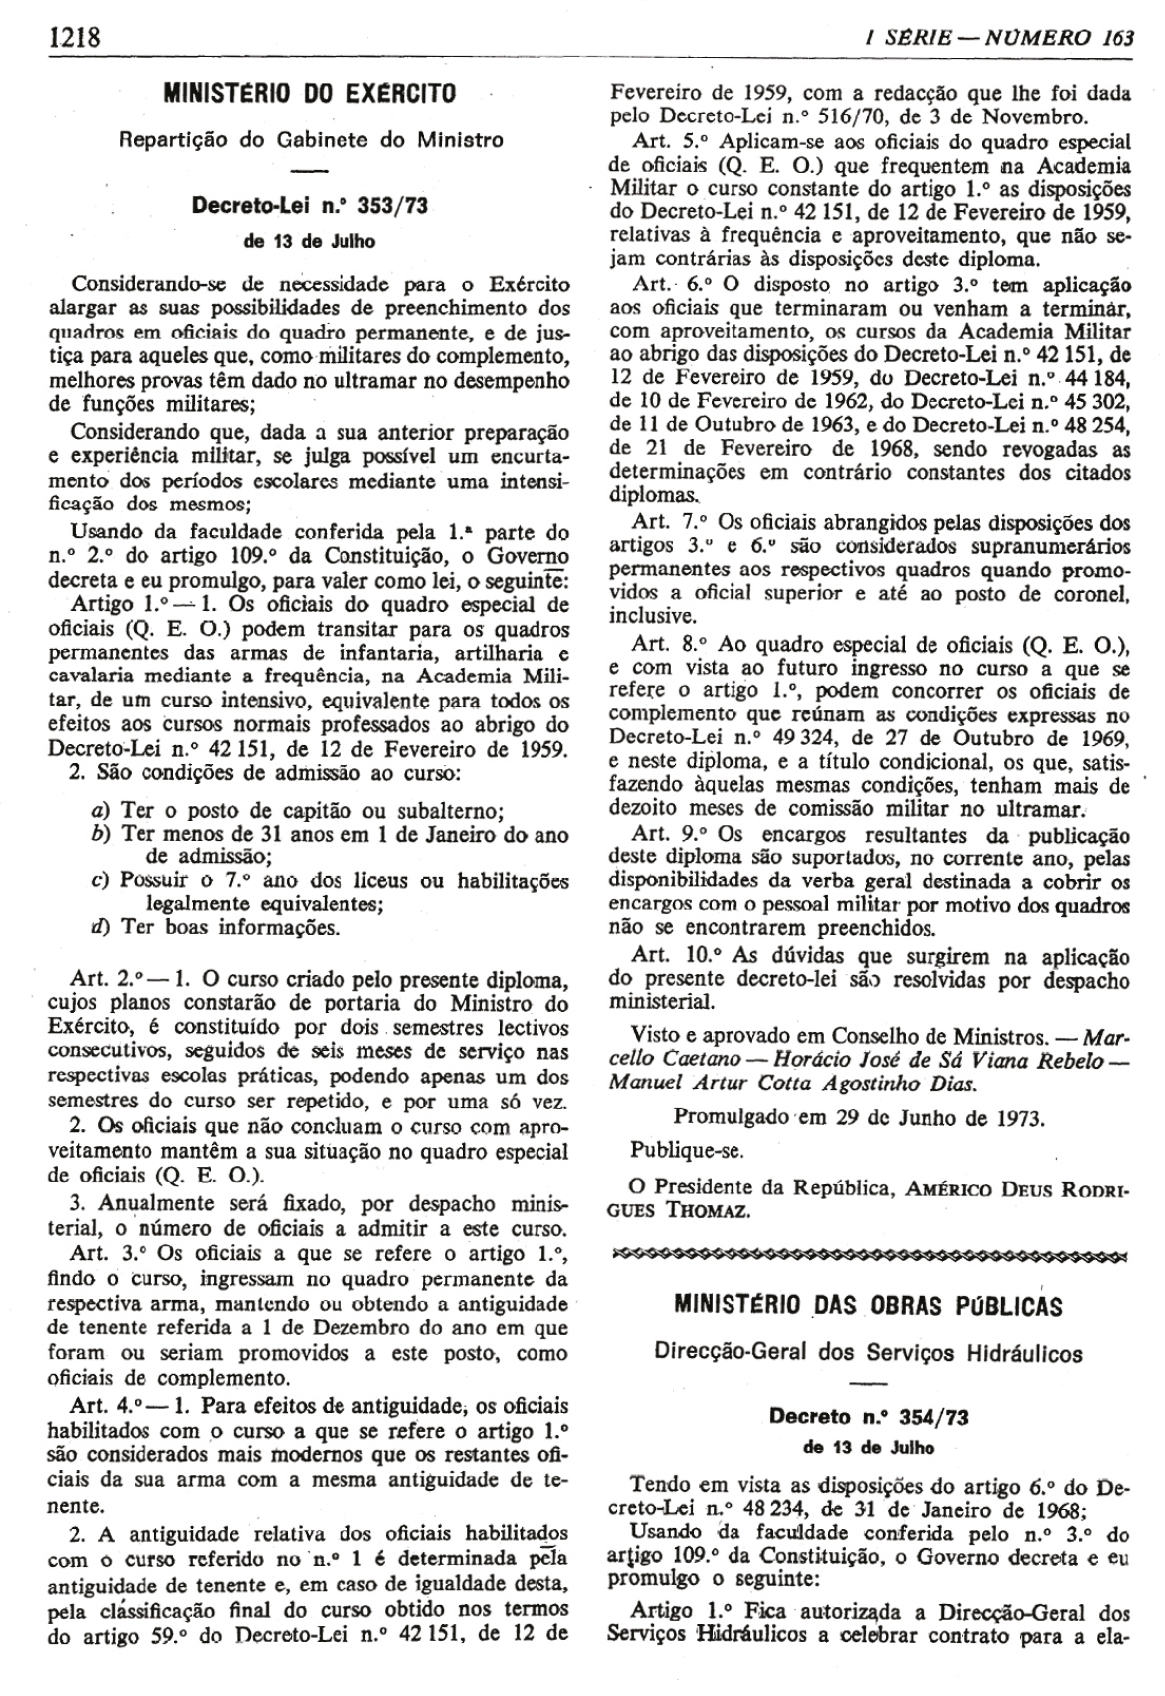 Decreto-Lei 353/73 de 13 de Julho de 1973. Imprensa Nacional